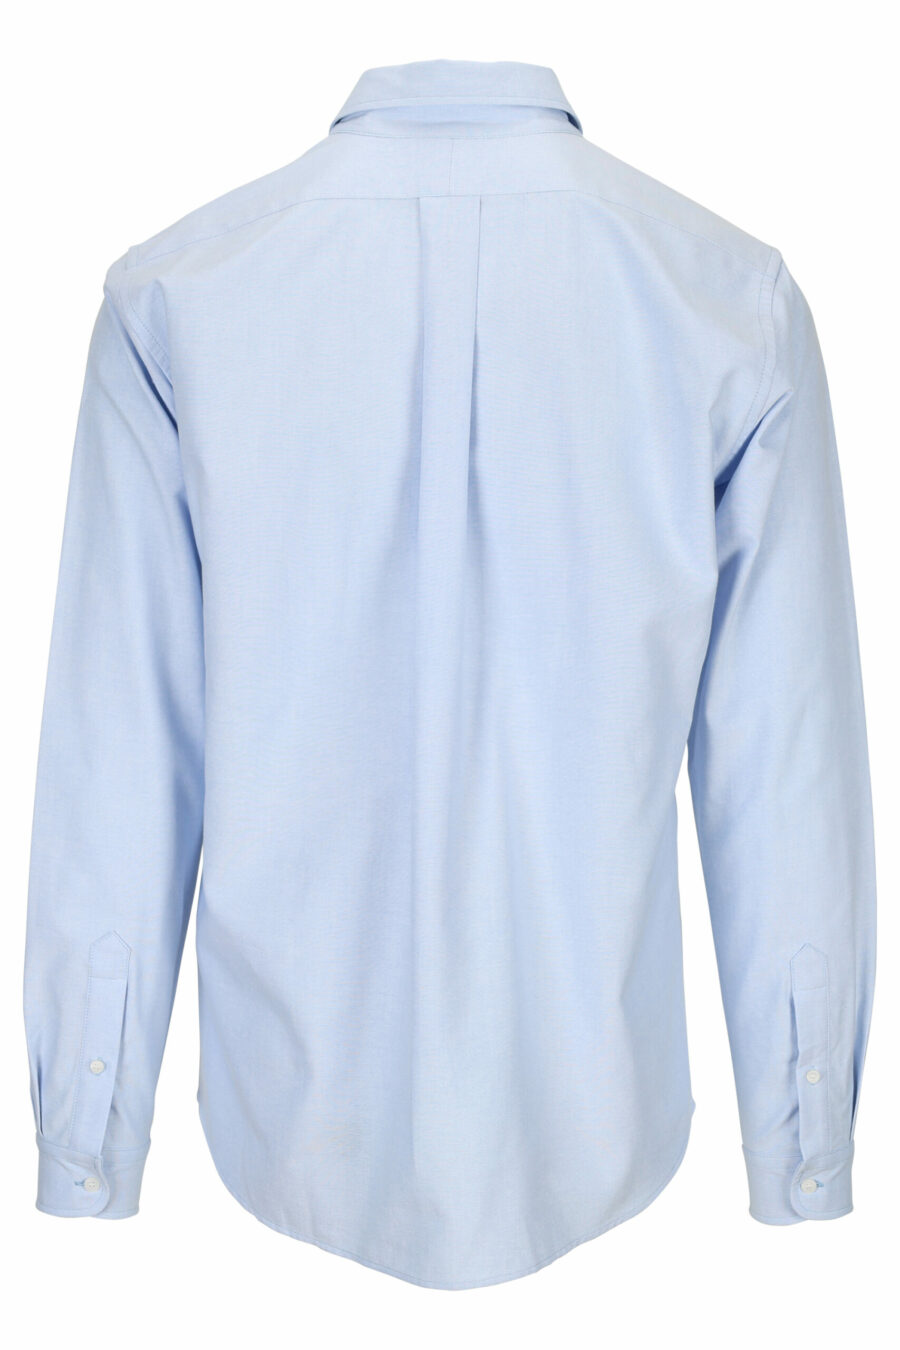 Camisa azul clara com o logótipo "boke flower" - 3612230432536 1 à escala